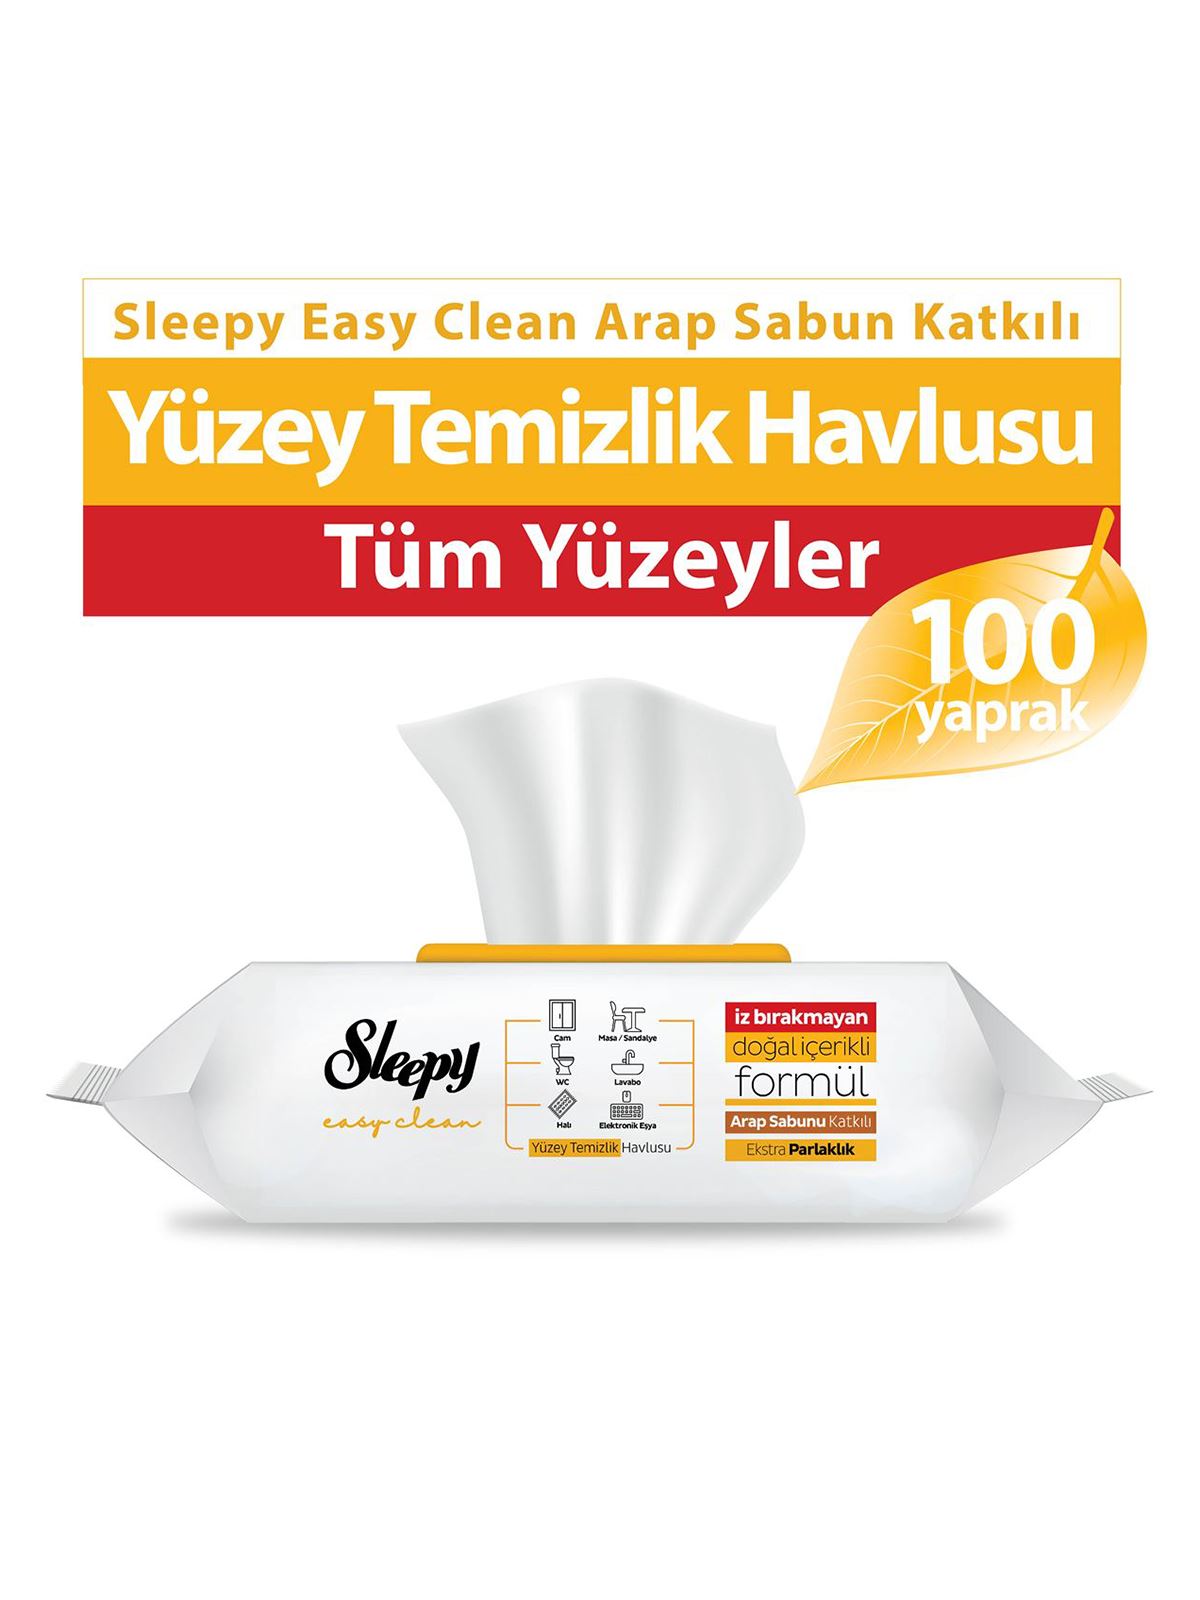 Sleepy Easy Clean Arap Sabunu Katkılı Yüzey Temizlik Havlusu 100 Adet